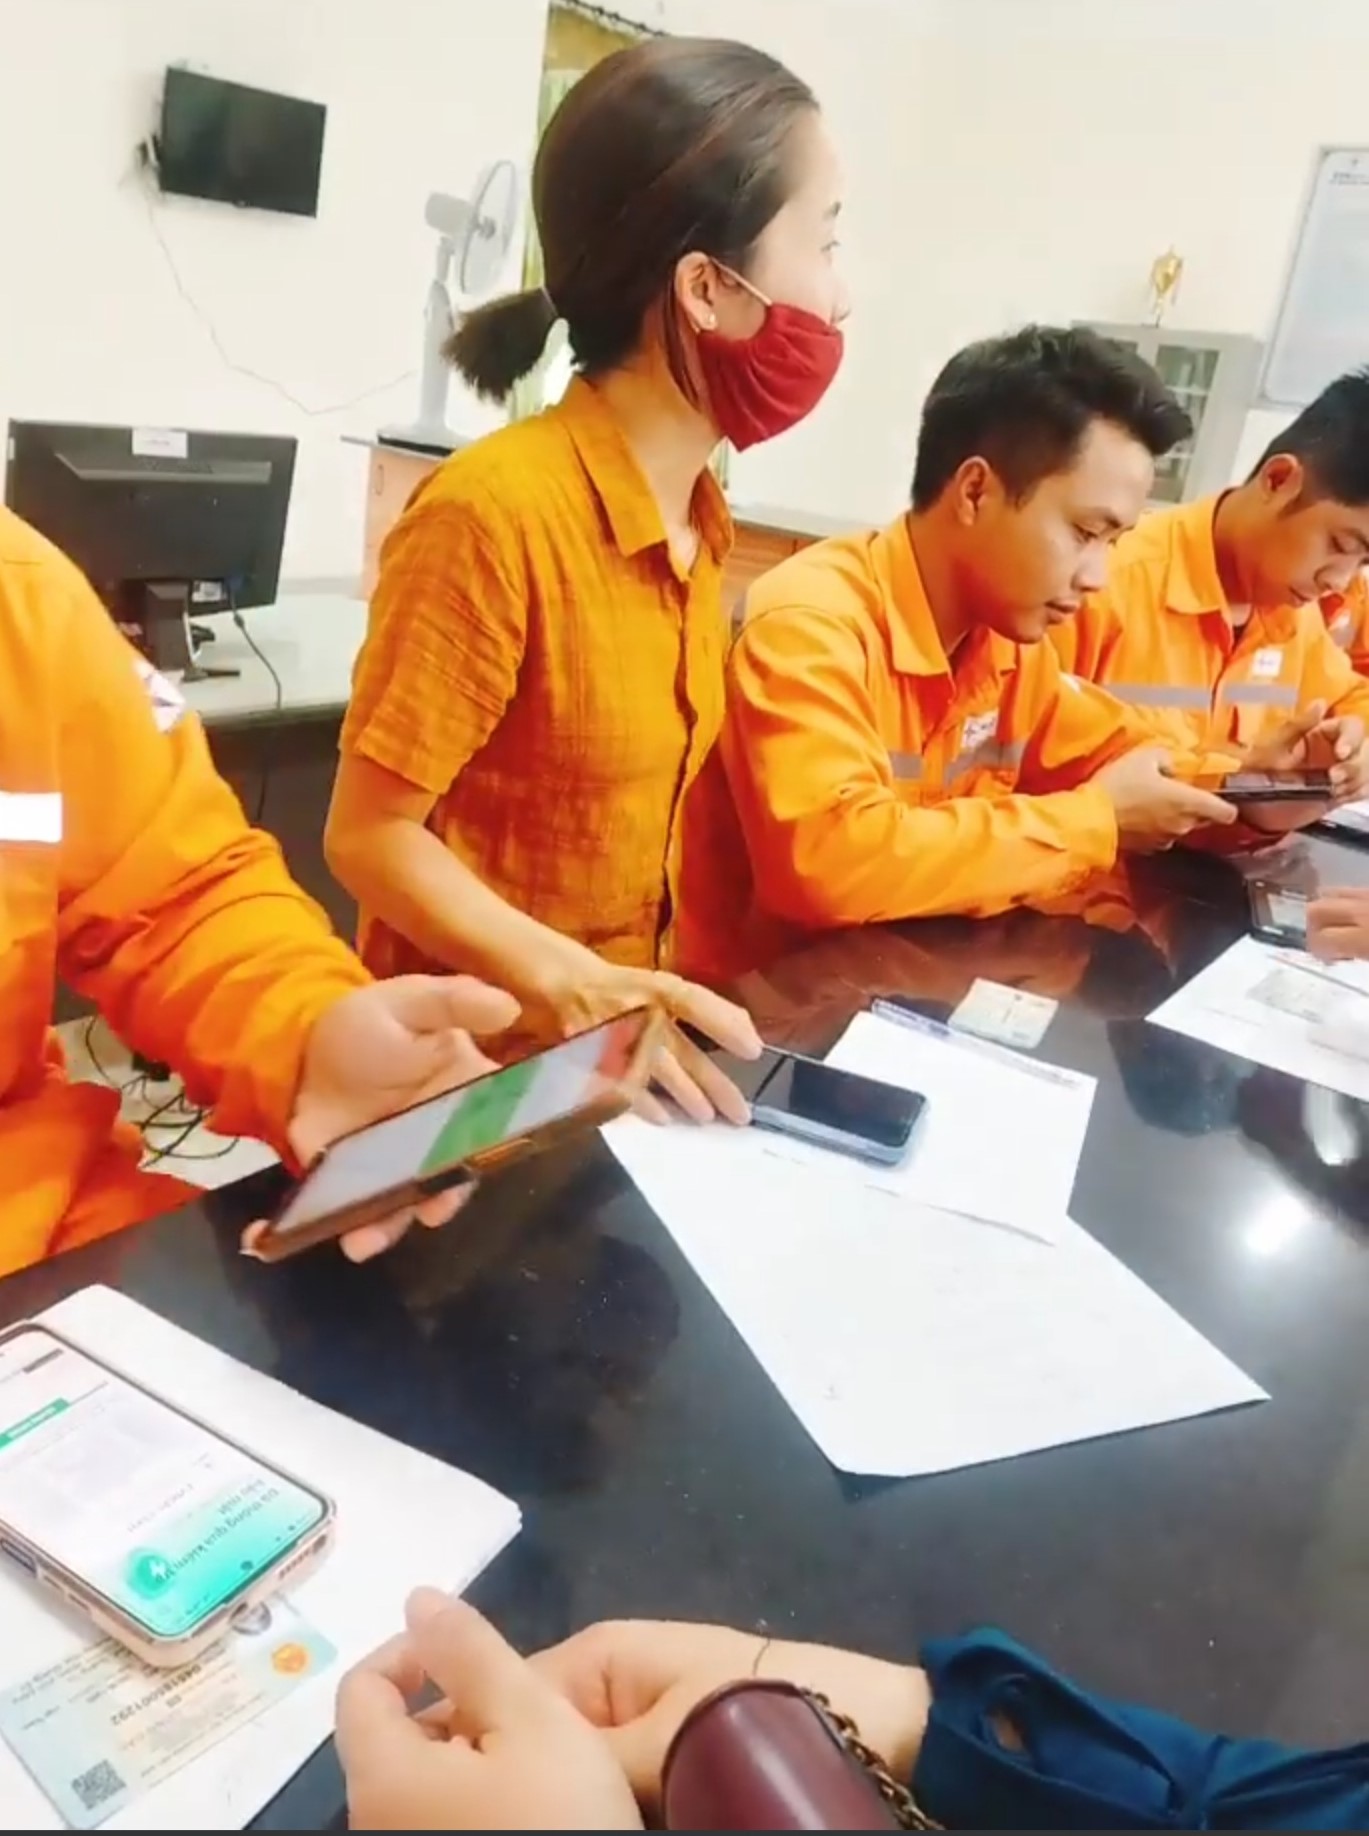 Nữ nhân viên được cho là nhân viên Bưu điện huyện Hướng Hóa mặc áo vàng, ngồi xen với nhân viên điện lực trong quá trình người dân đến làm thủ tục mua bán điện điện tử. Ảnh: Người dân cung cấp.